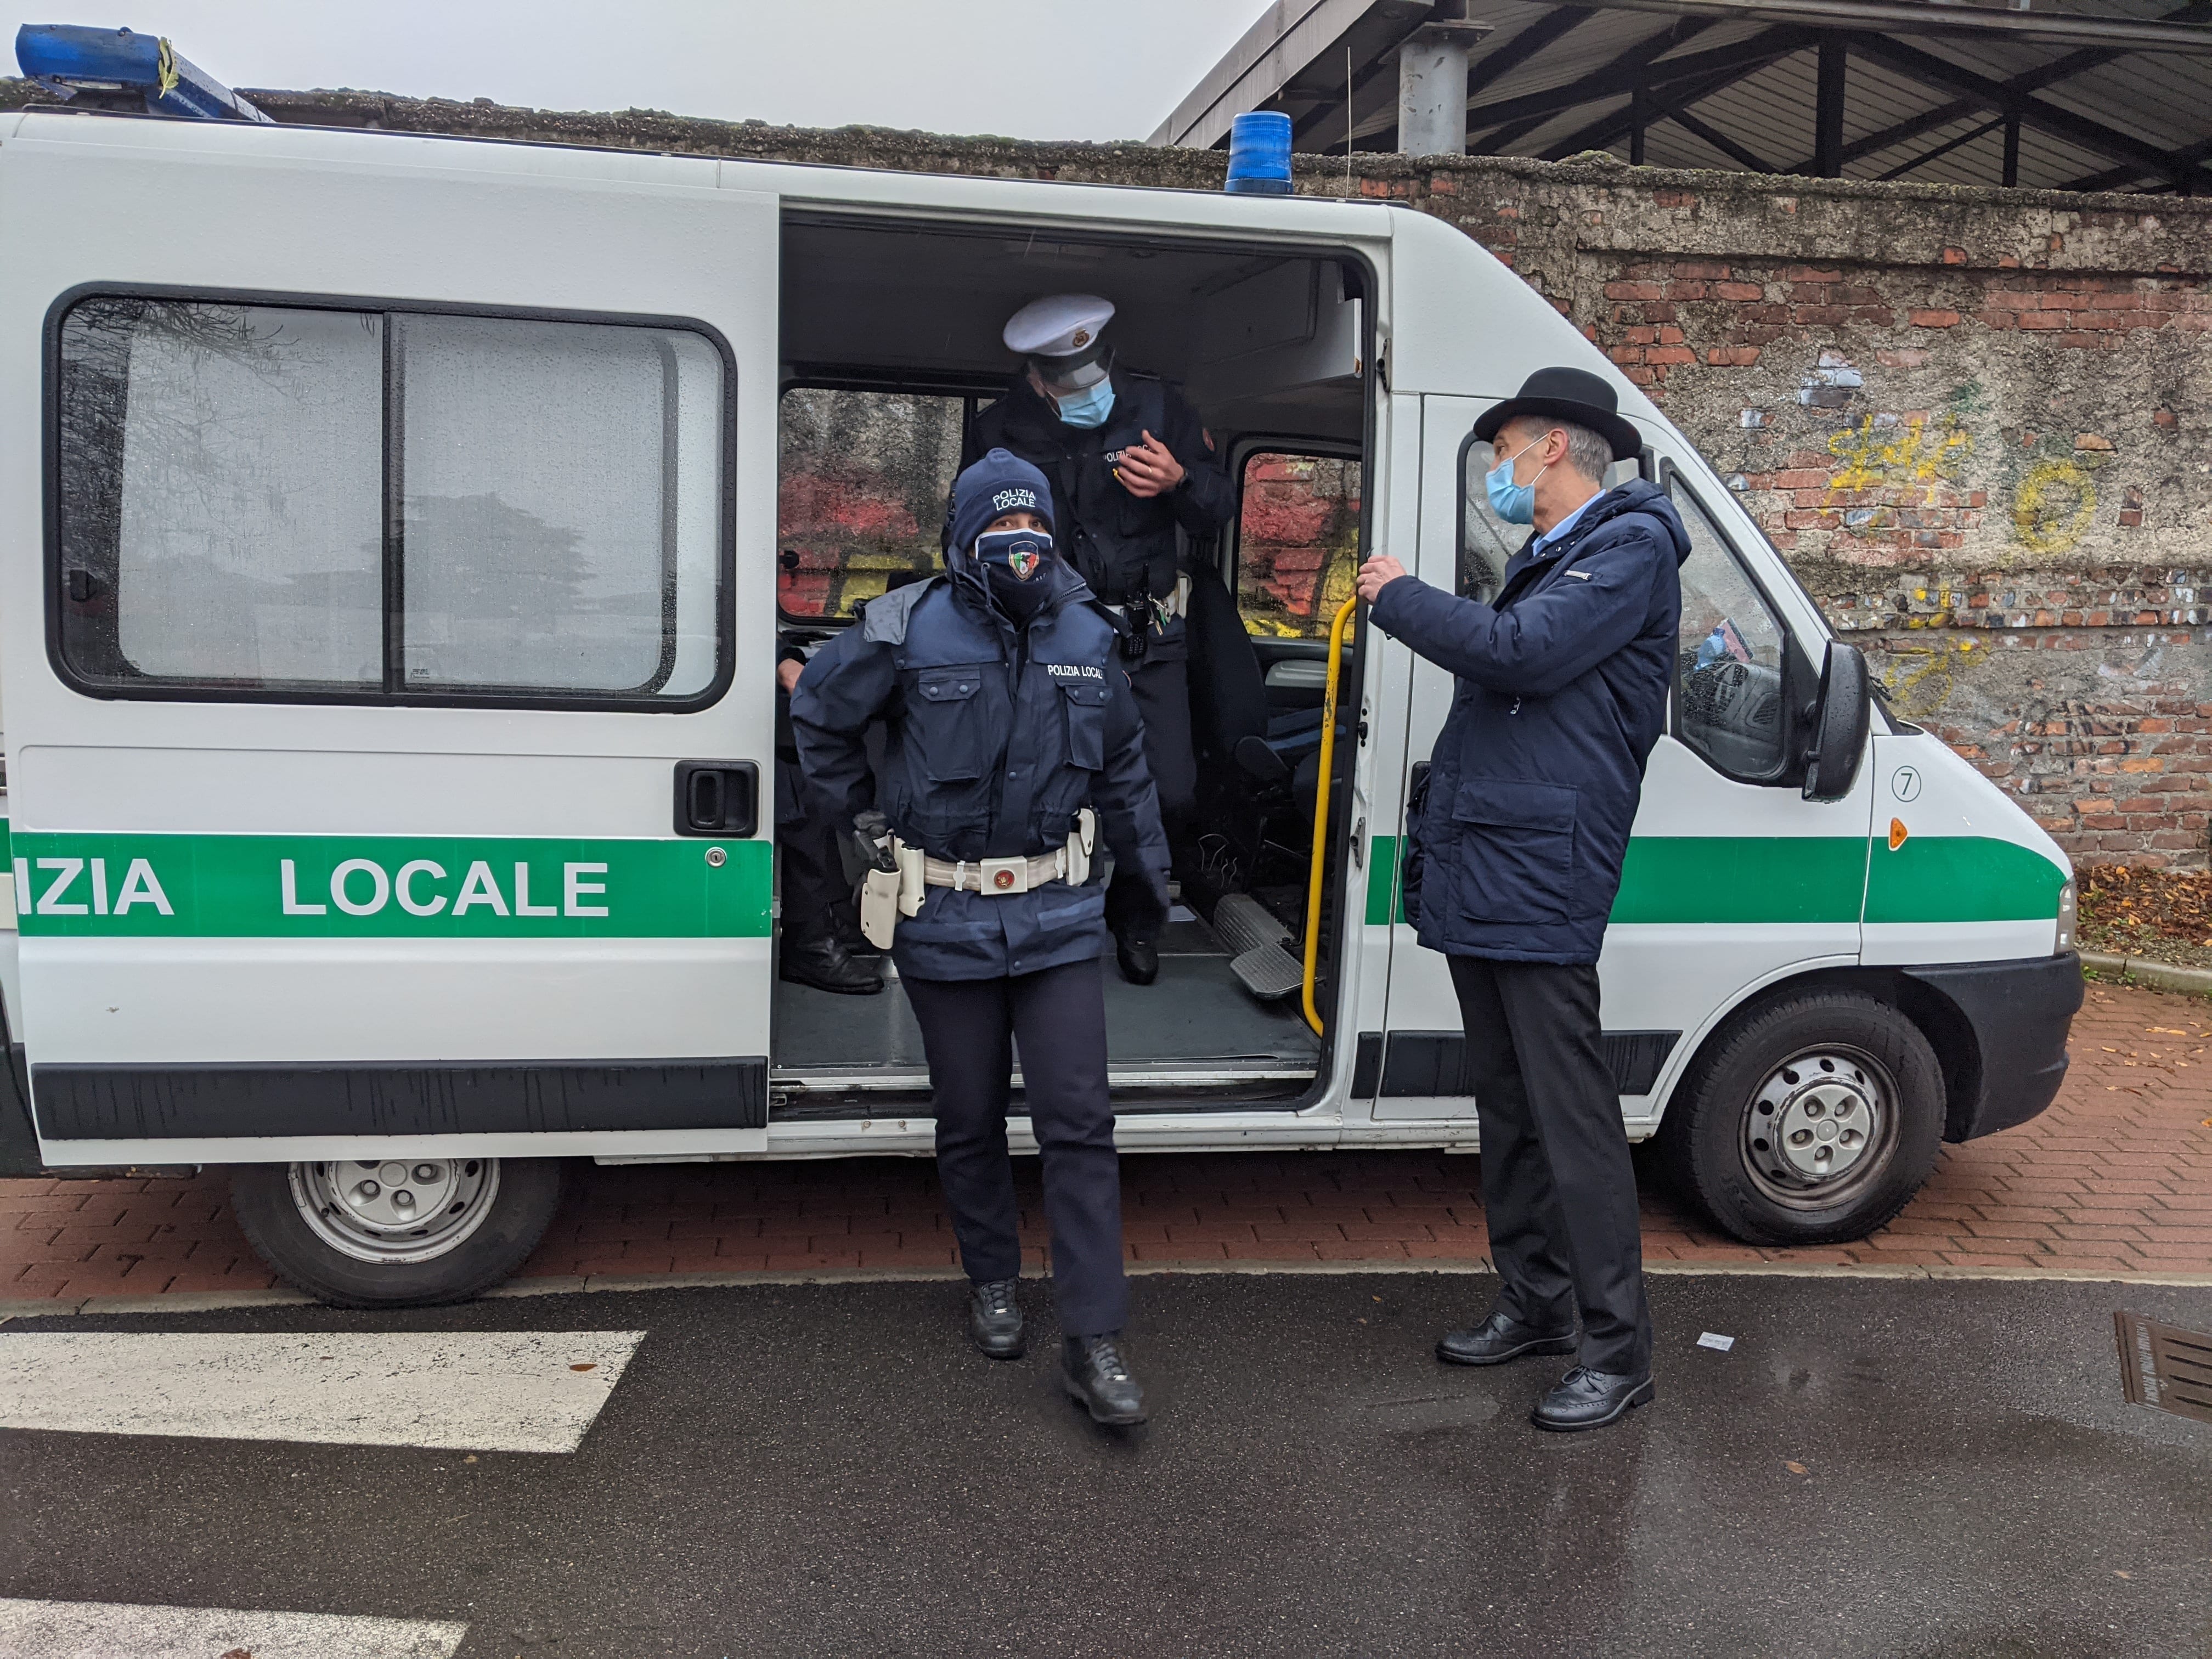 Polizia locale, ufficio mobile nei quartieri di Saronno. Il sindaco: “Più vicini ai cittadini”